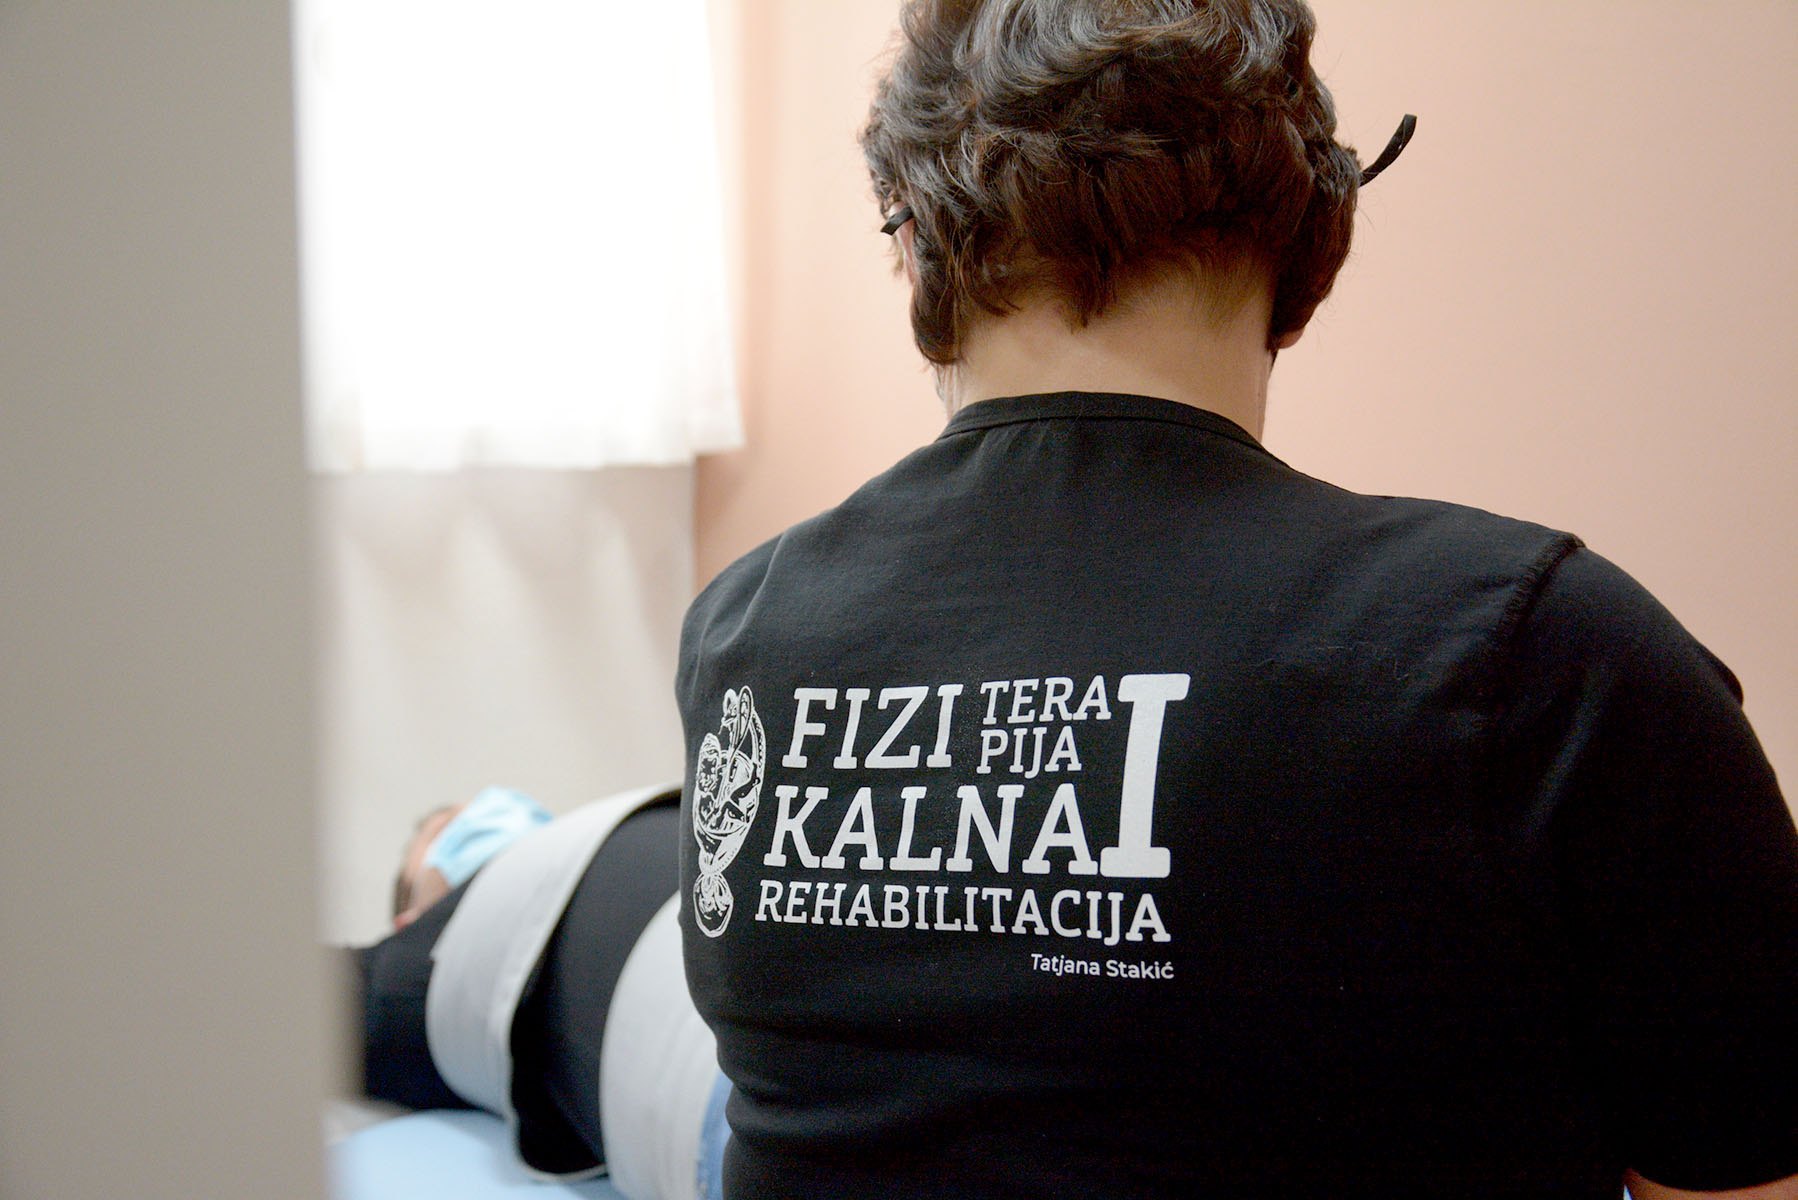 Privatna praksa fizikalne terapije i rehabilitacije Tatjana Stakić je mjesto koje osim vrhunskih zdravstvenih, nudi i kozmetičke usluge